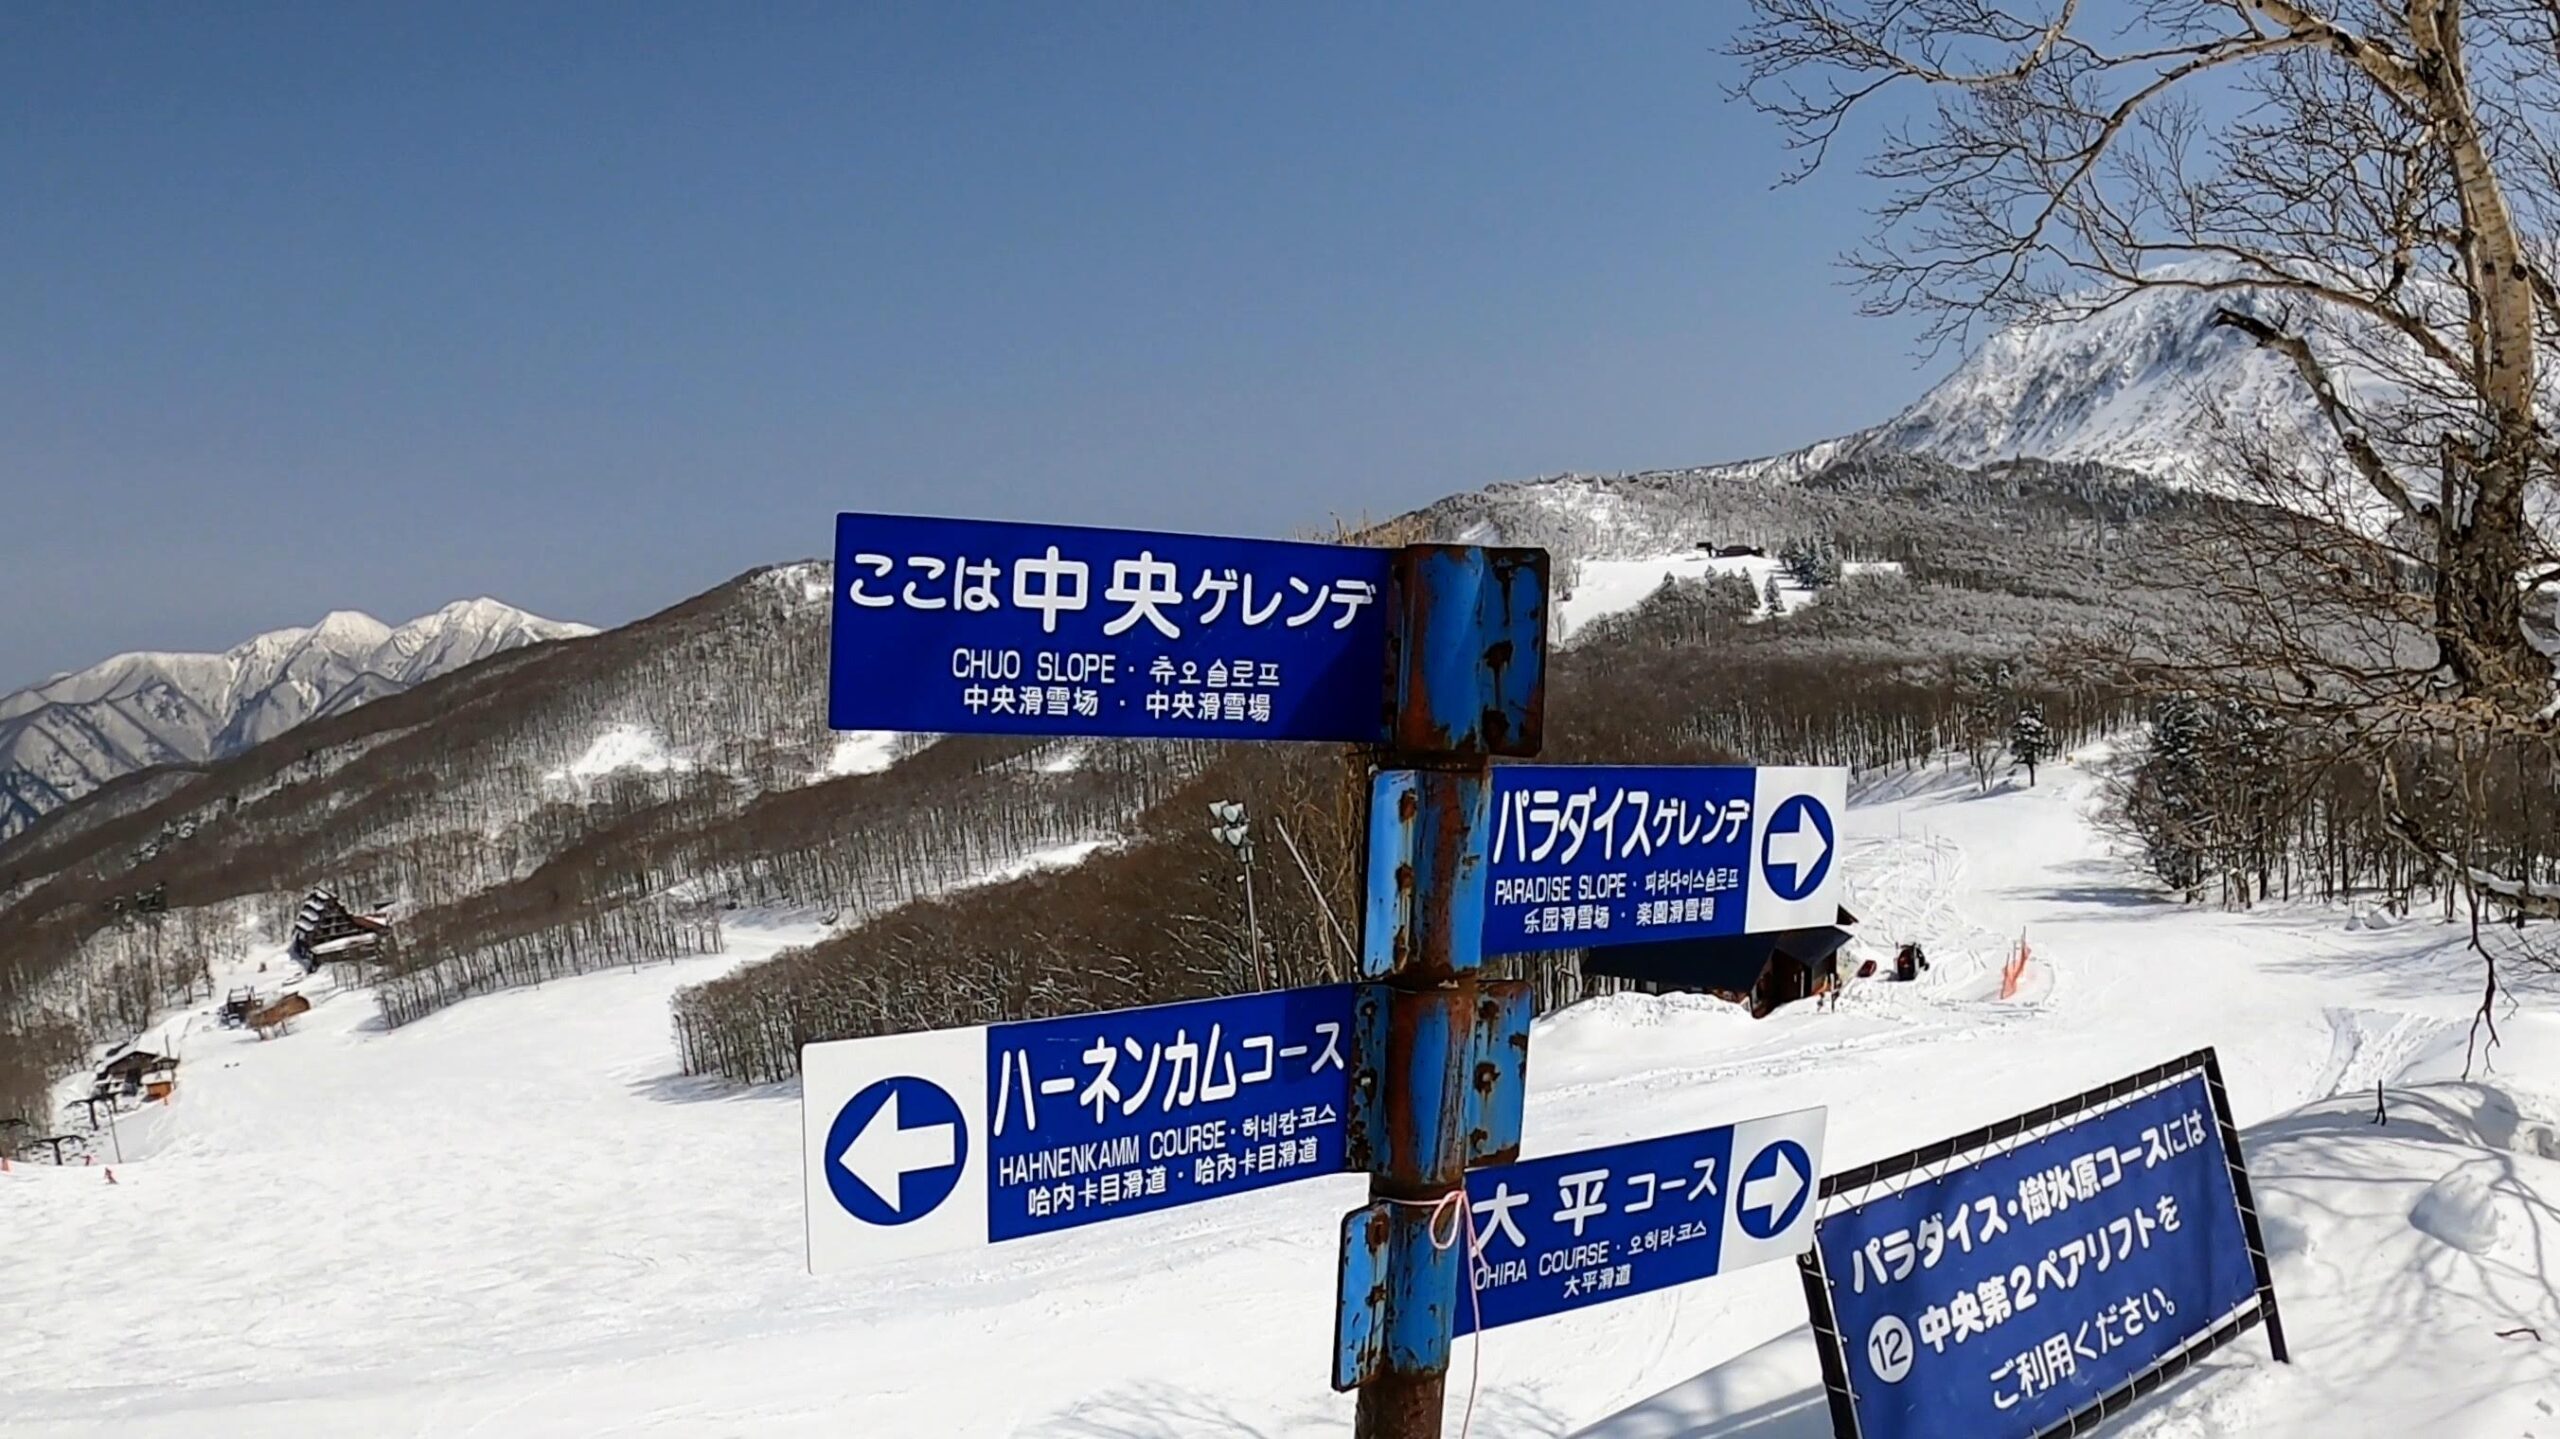 【春のZAO情報 リフト 積雪 コースは？】3月末大快晴パウダー yamagatazao-information-in-spring.jpg